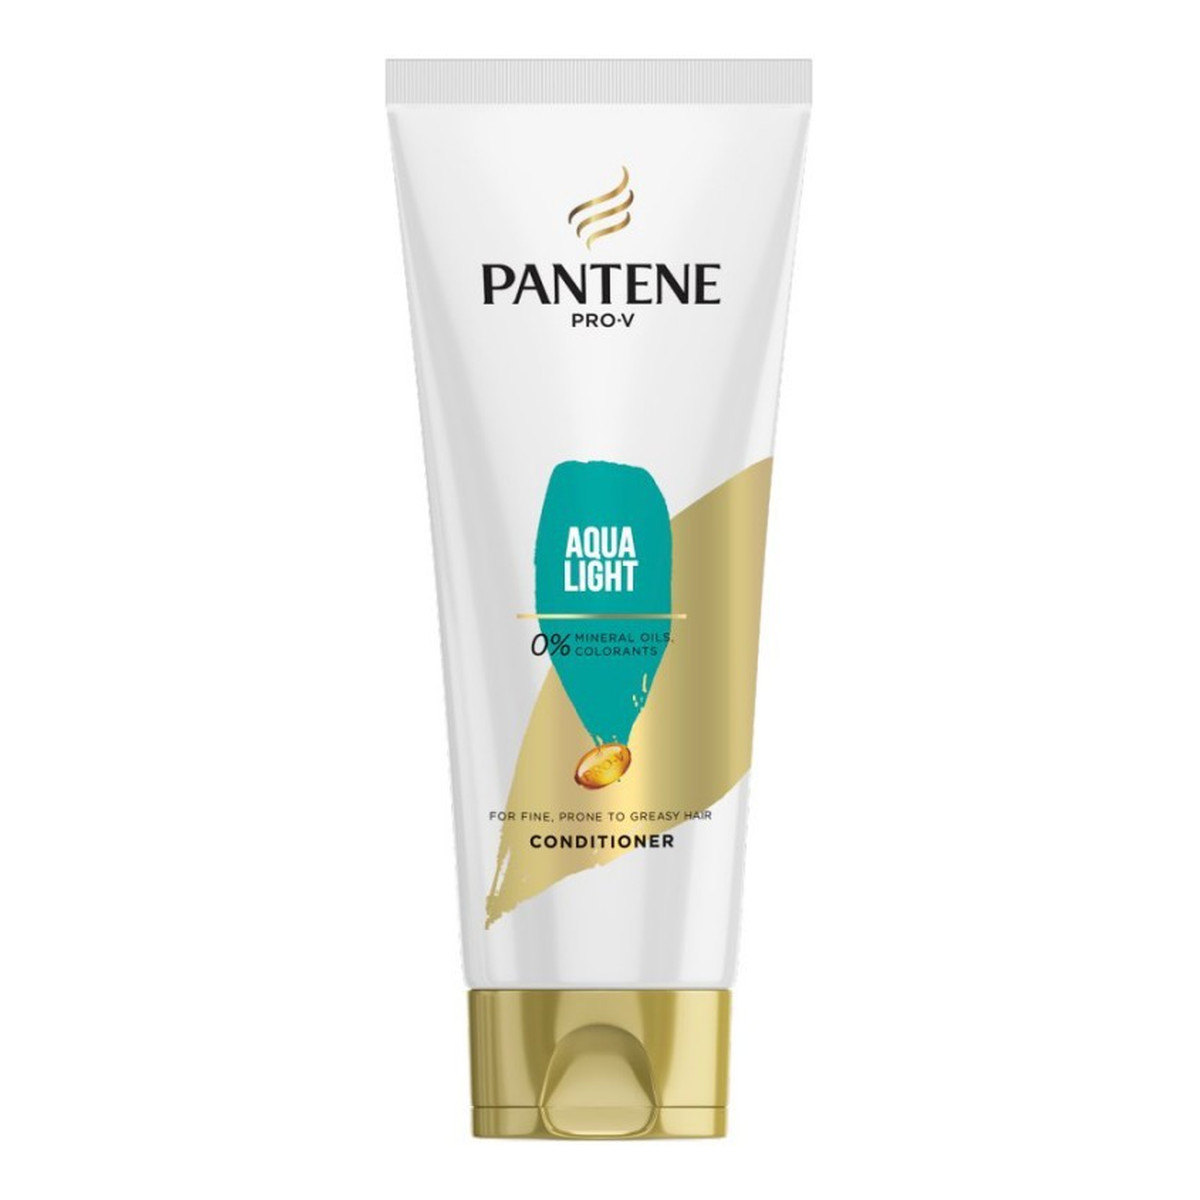 Pantene Pro-V Aqua Light odżywka do włosów 200ml